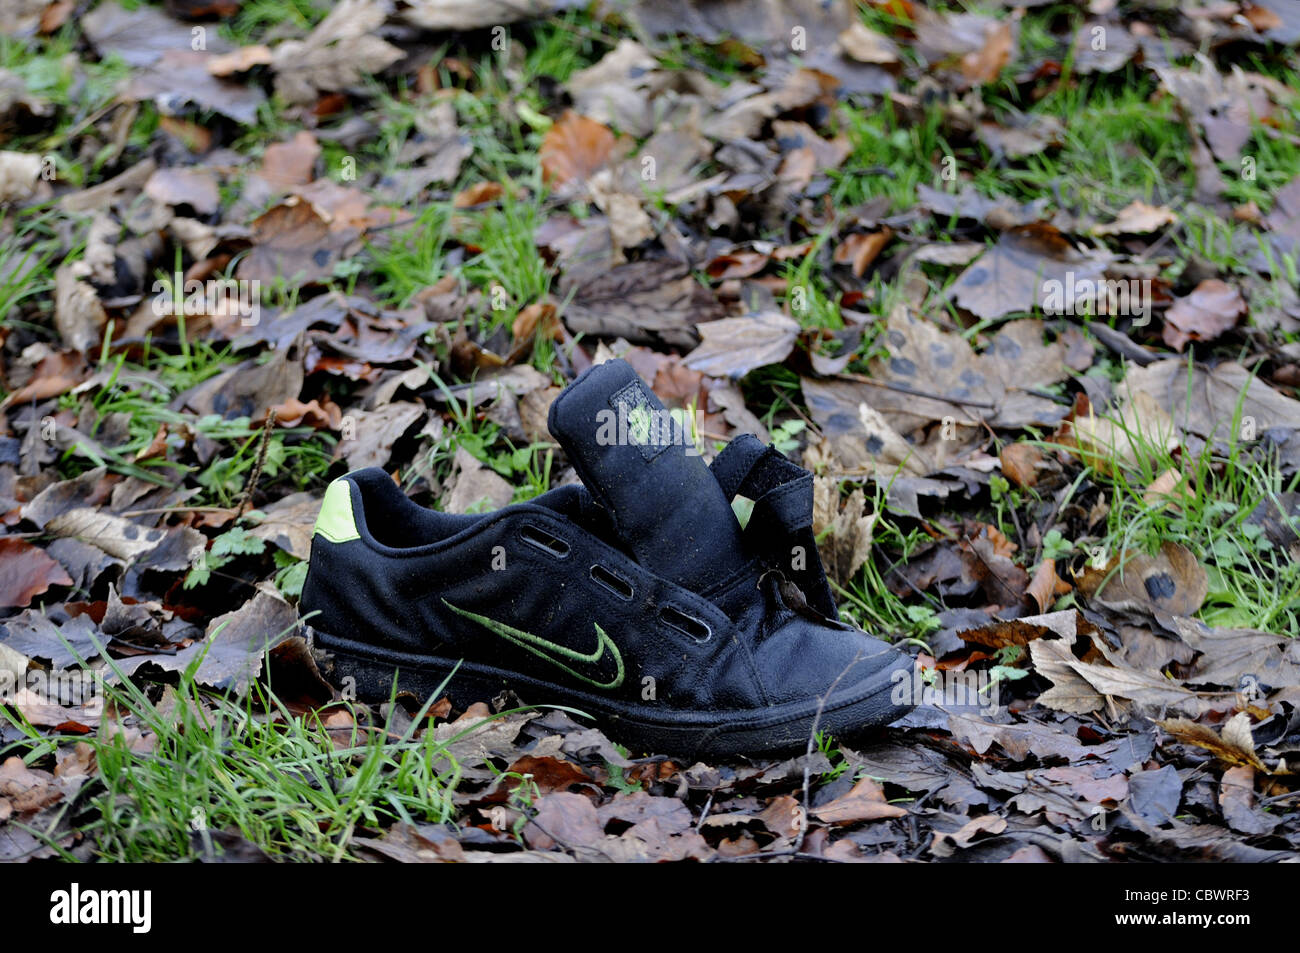 Chaussure de course Nike Trainer abandonnés Banque D'Images